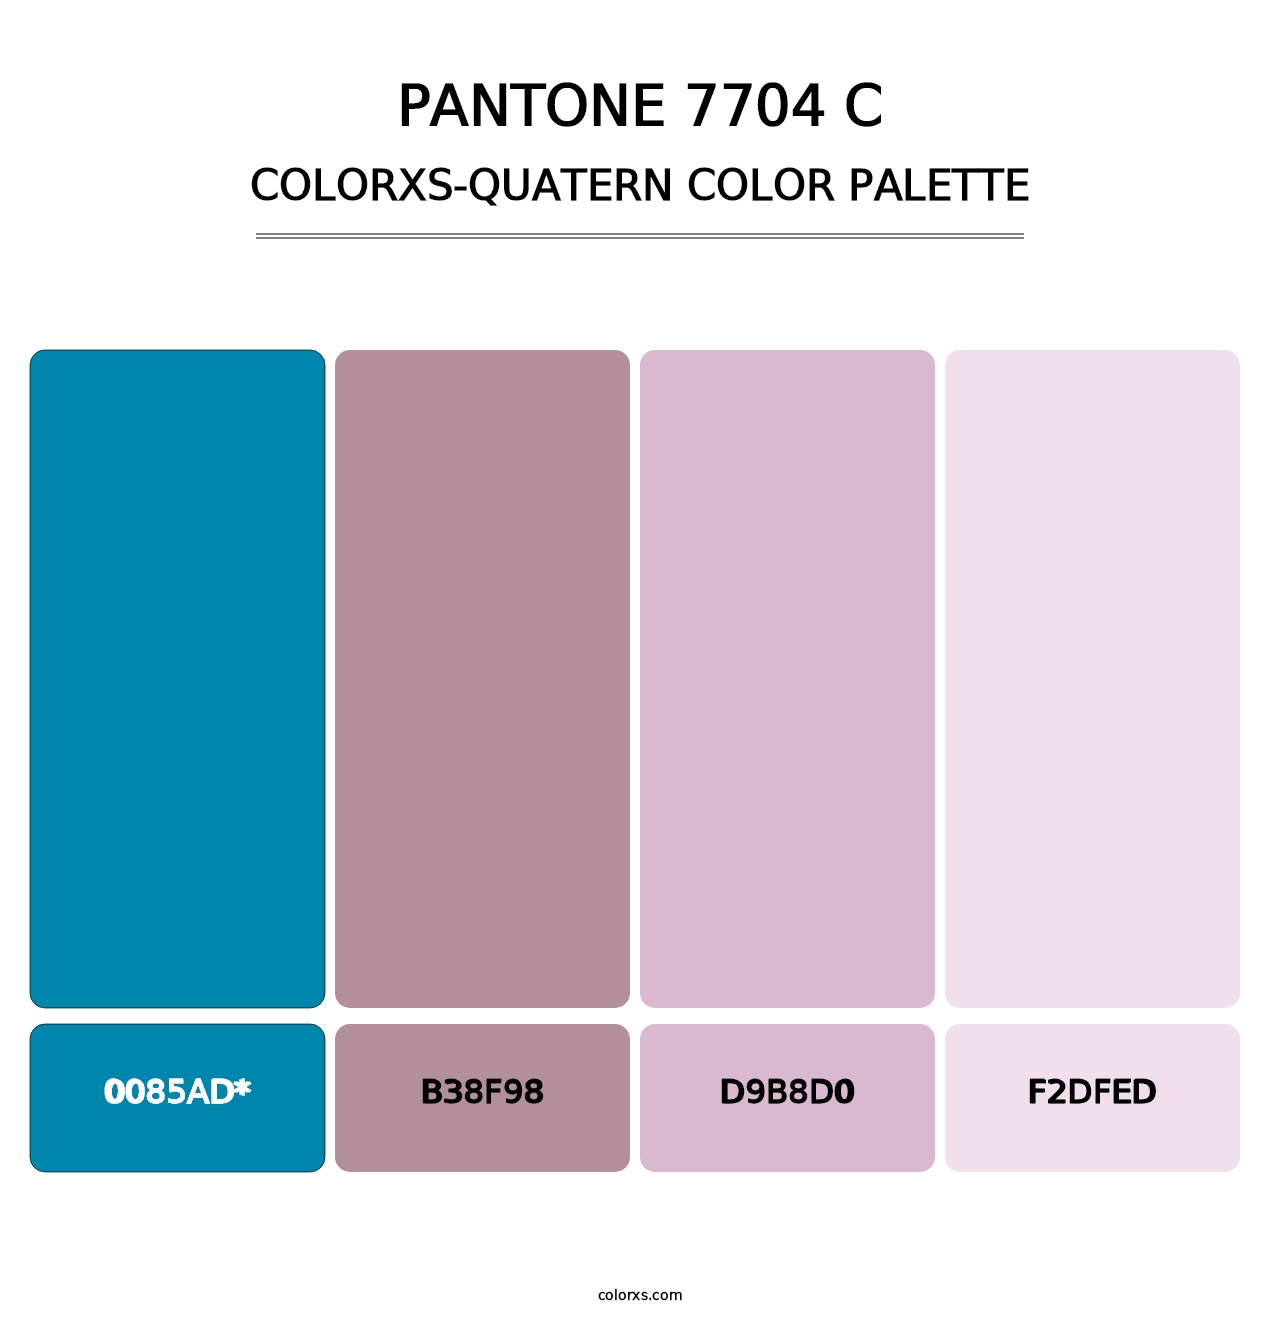 PANTONE 7704 C - Colorxs Quad Palette